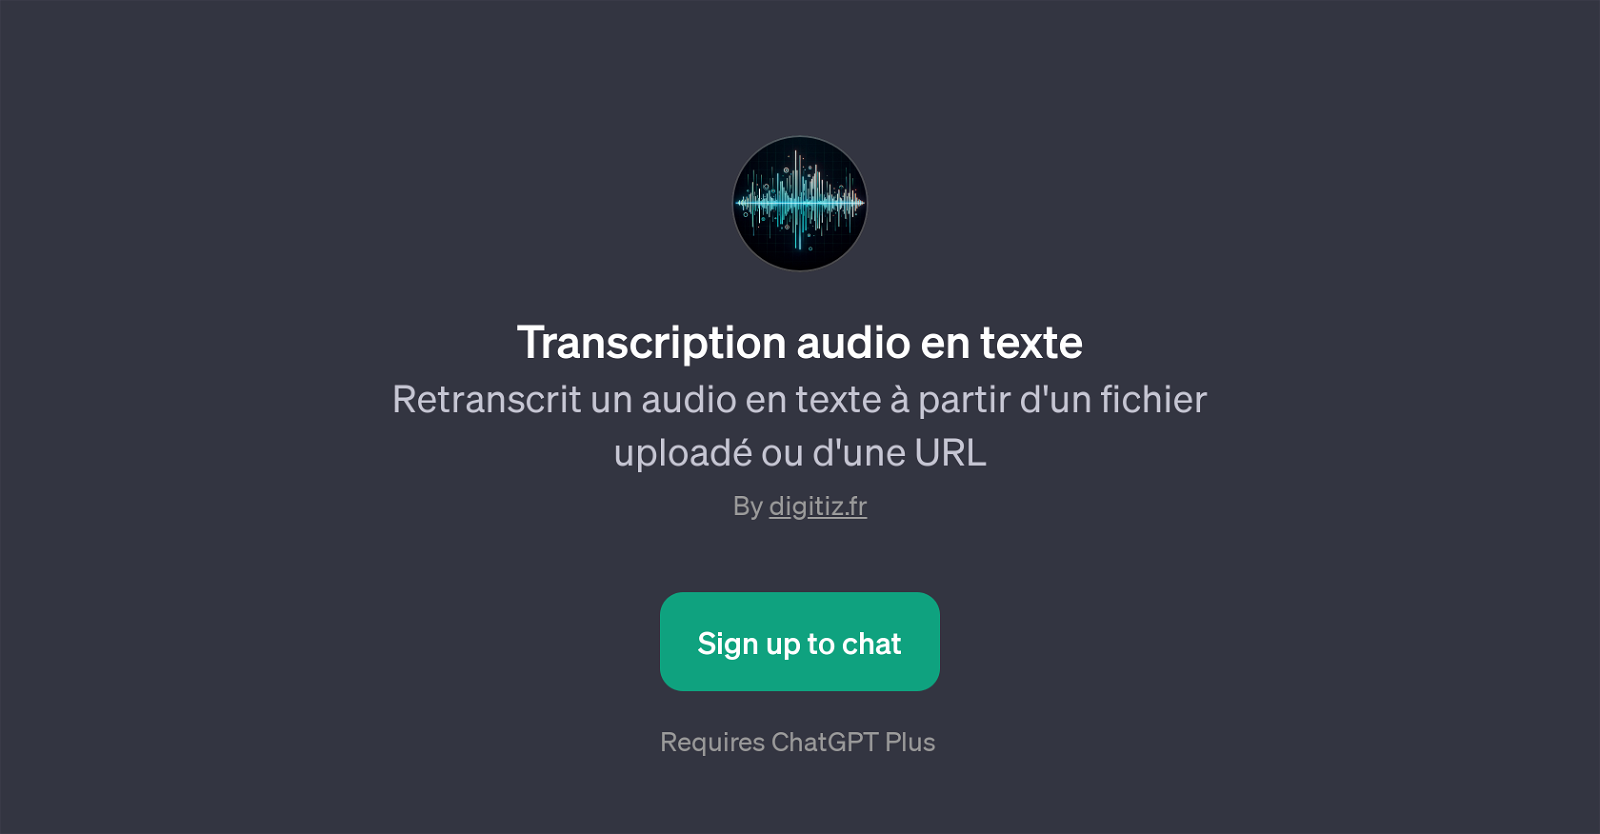 Transcription audio en texte website